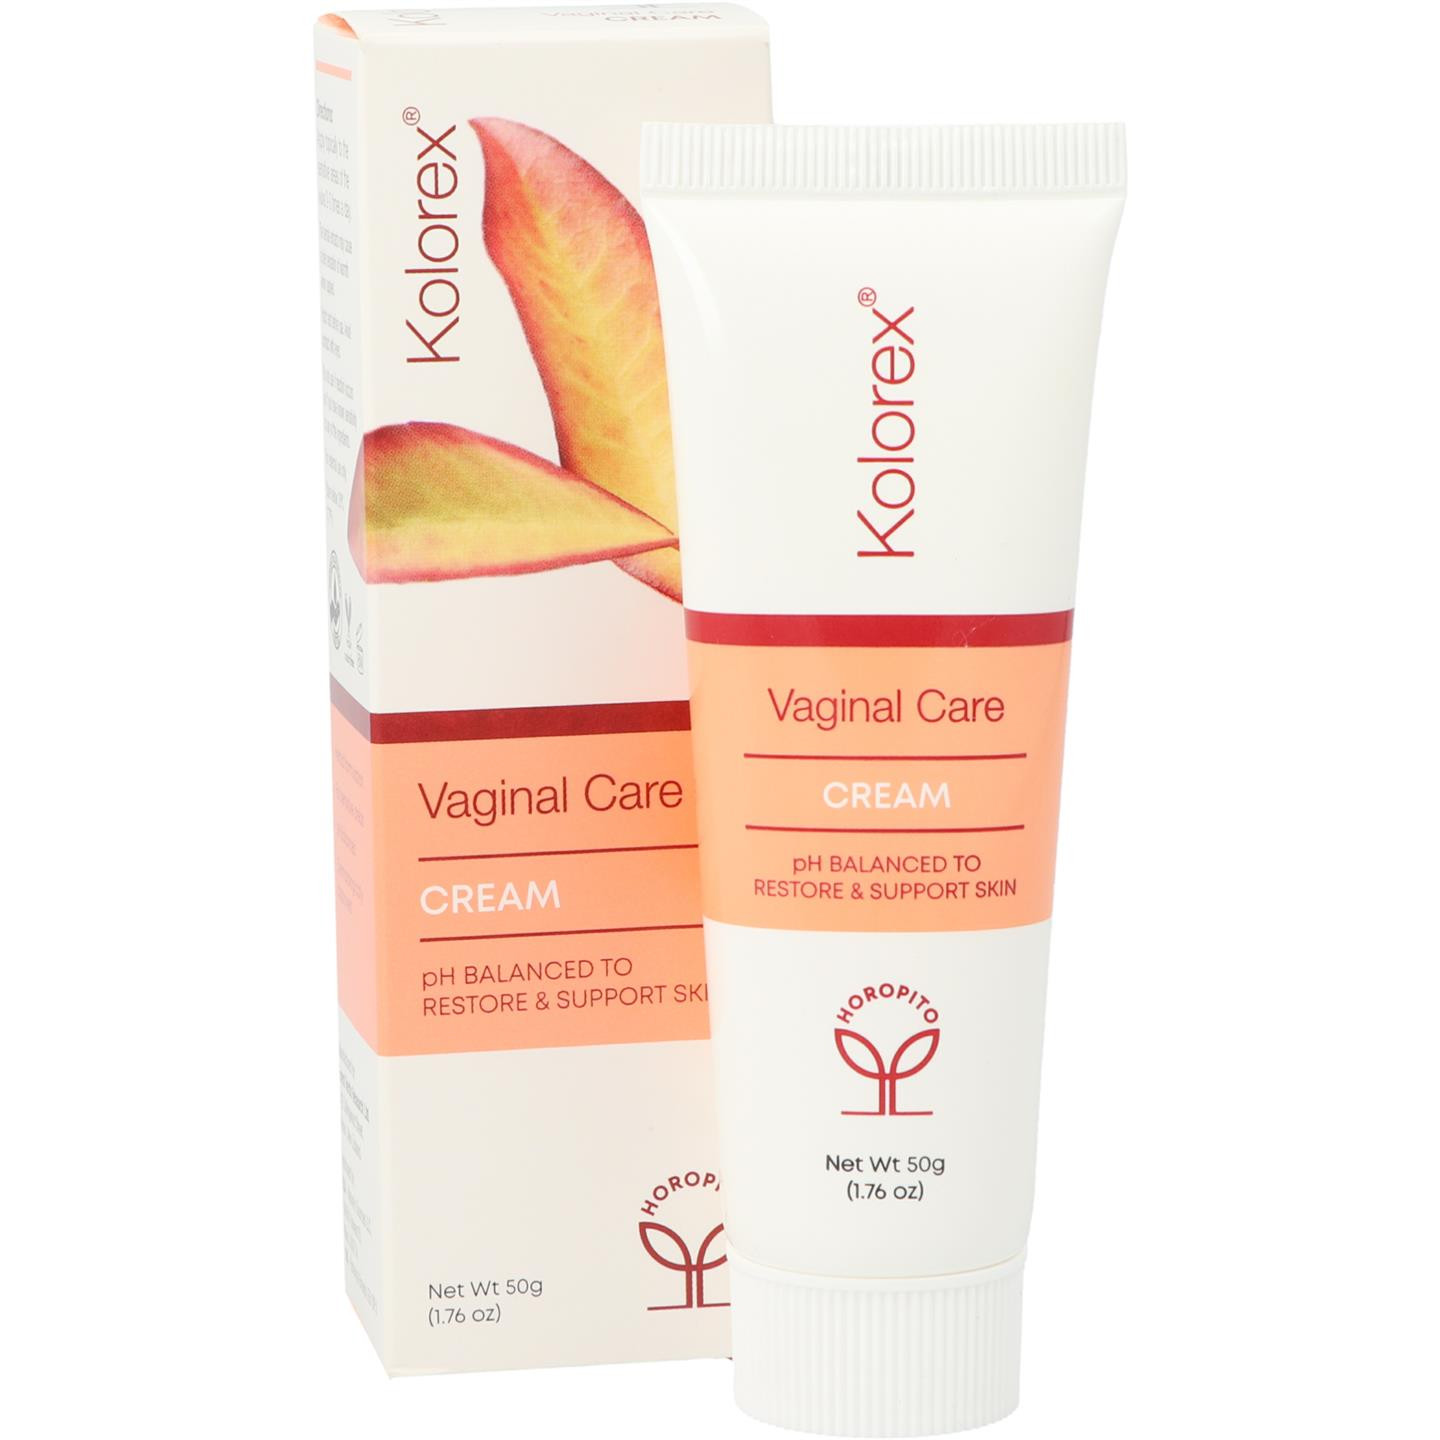 Vaginal Care cream